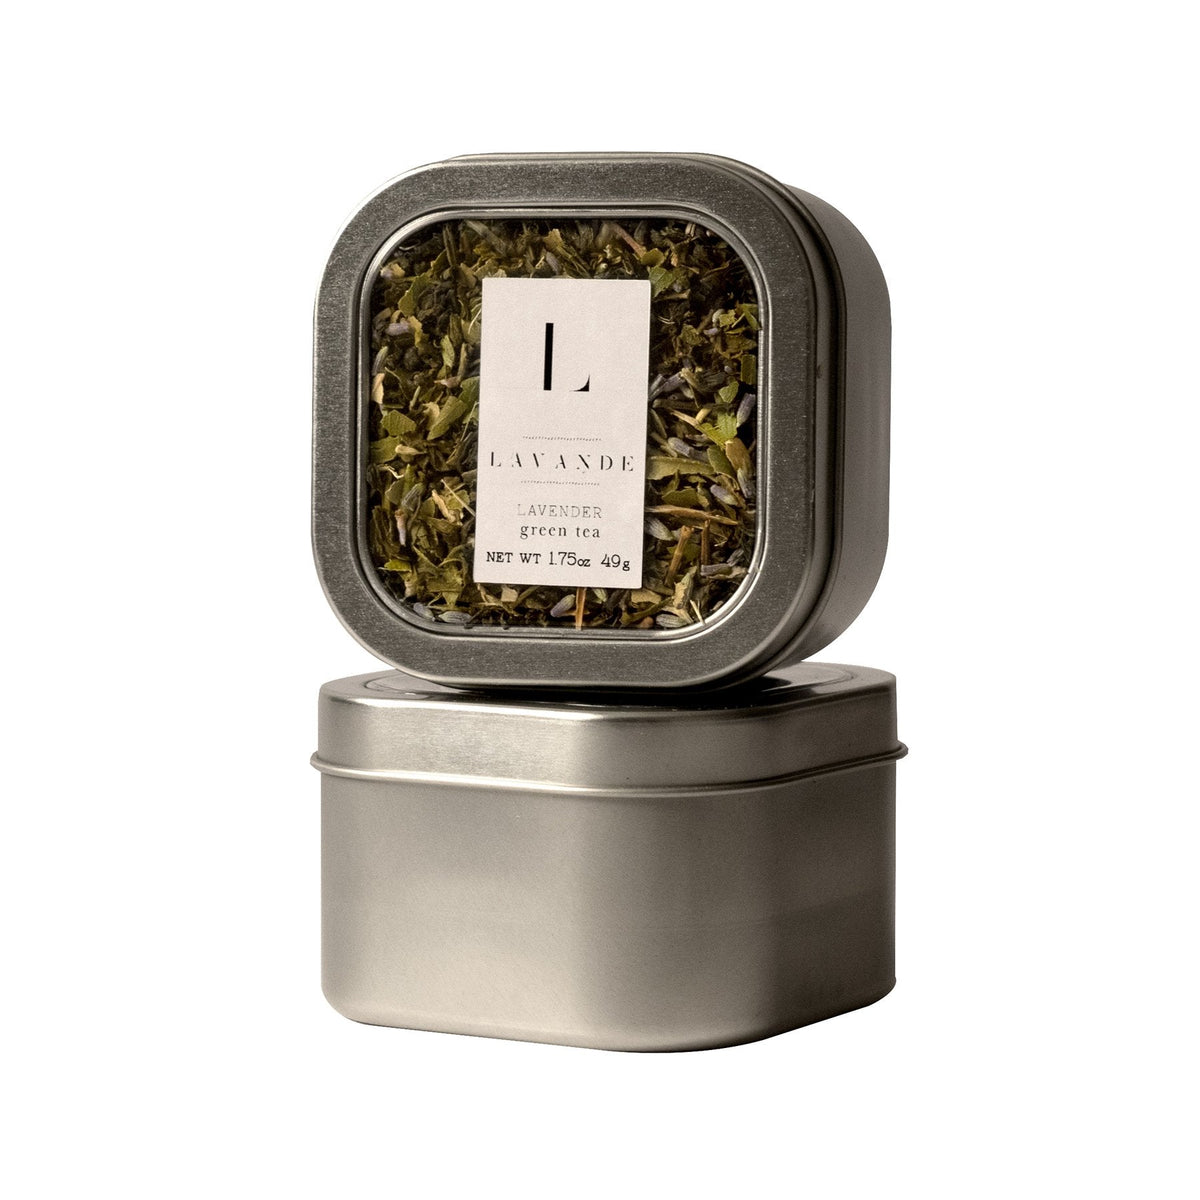 Lavande - Lavender Lemon Ginseng Green Tea